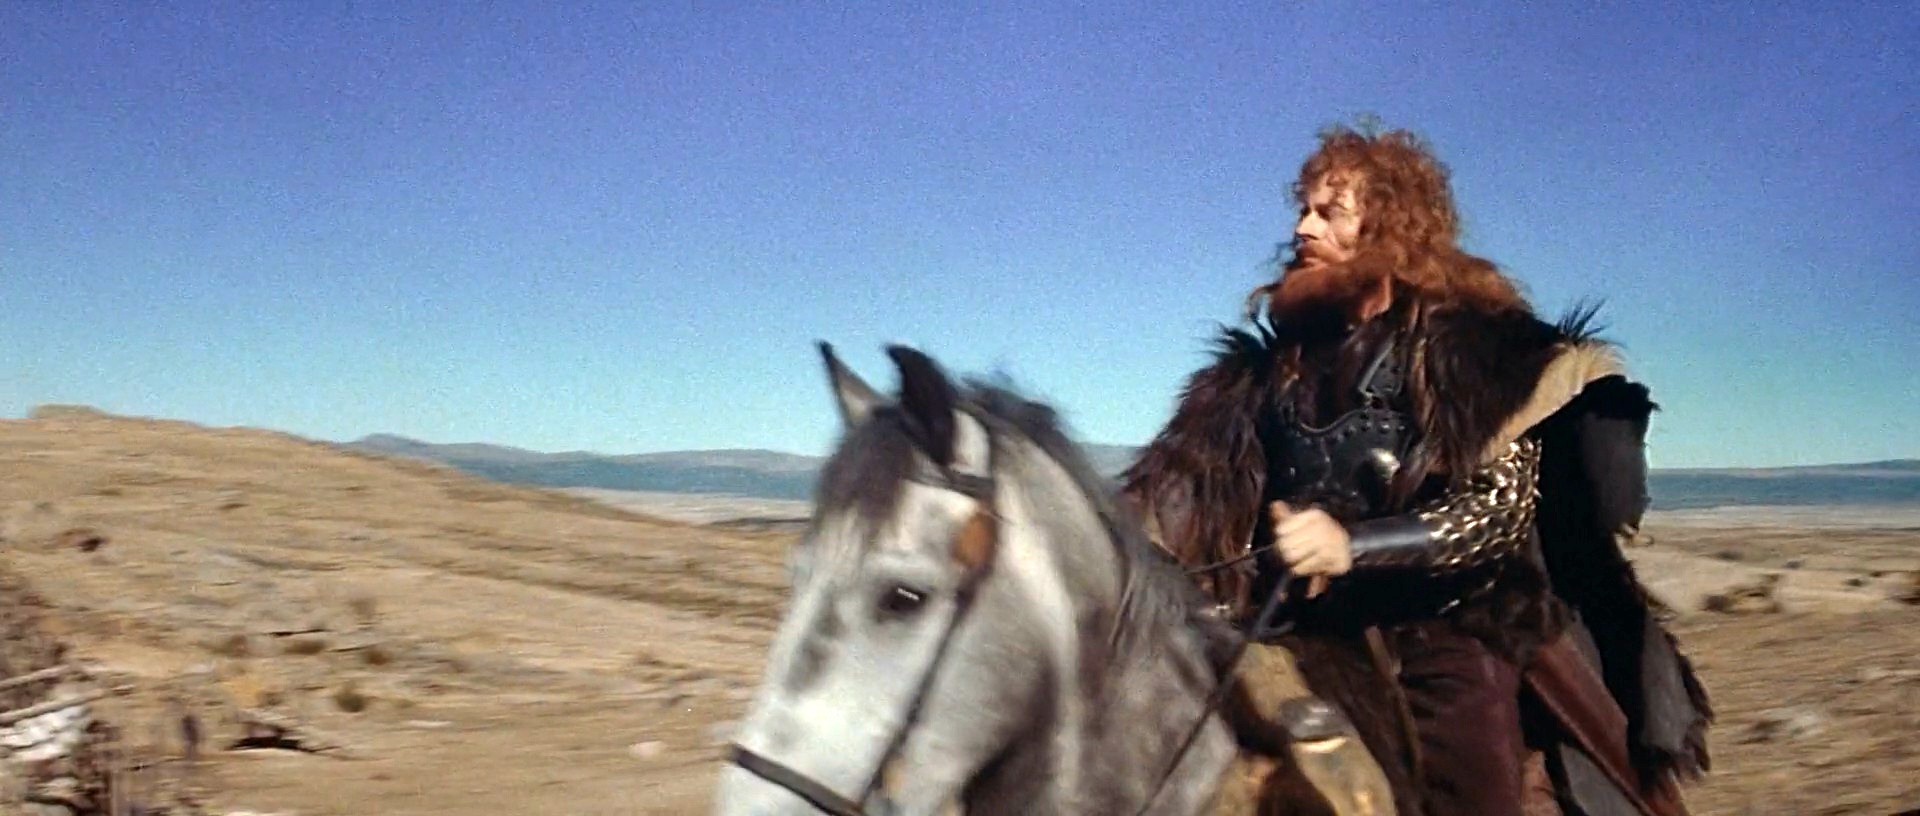 Conan.The.Barbarian.1982.1080p.BluRay.H264.AAC-RARBG4.jpg